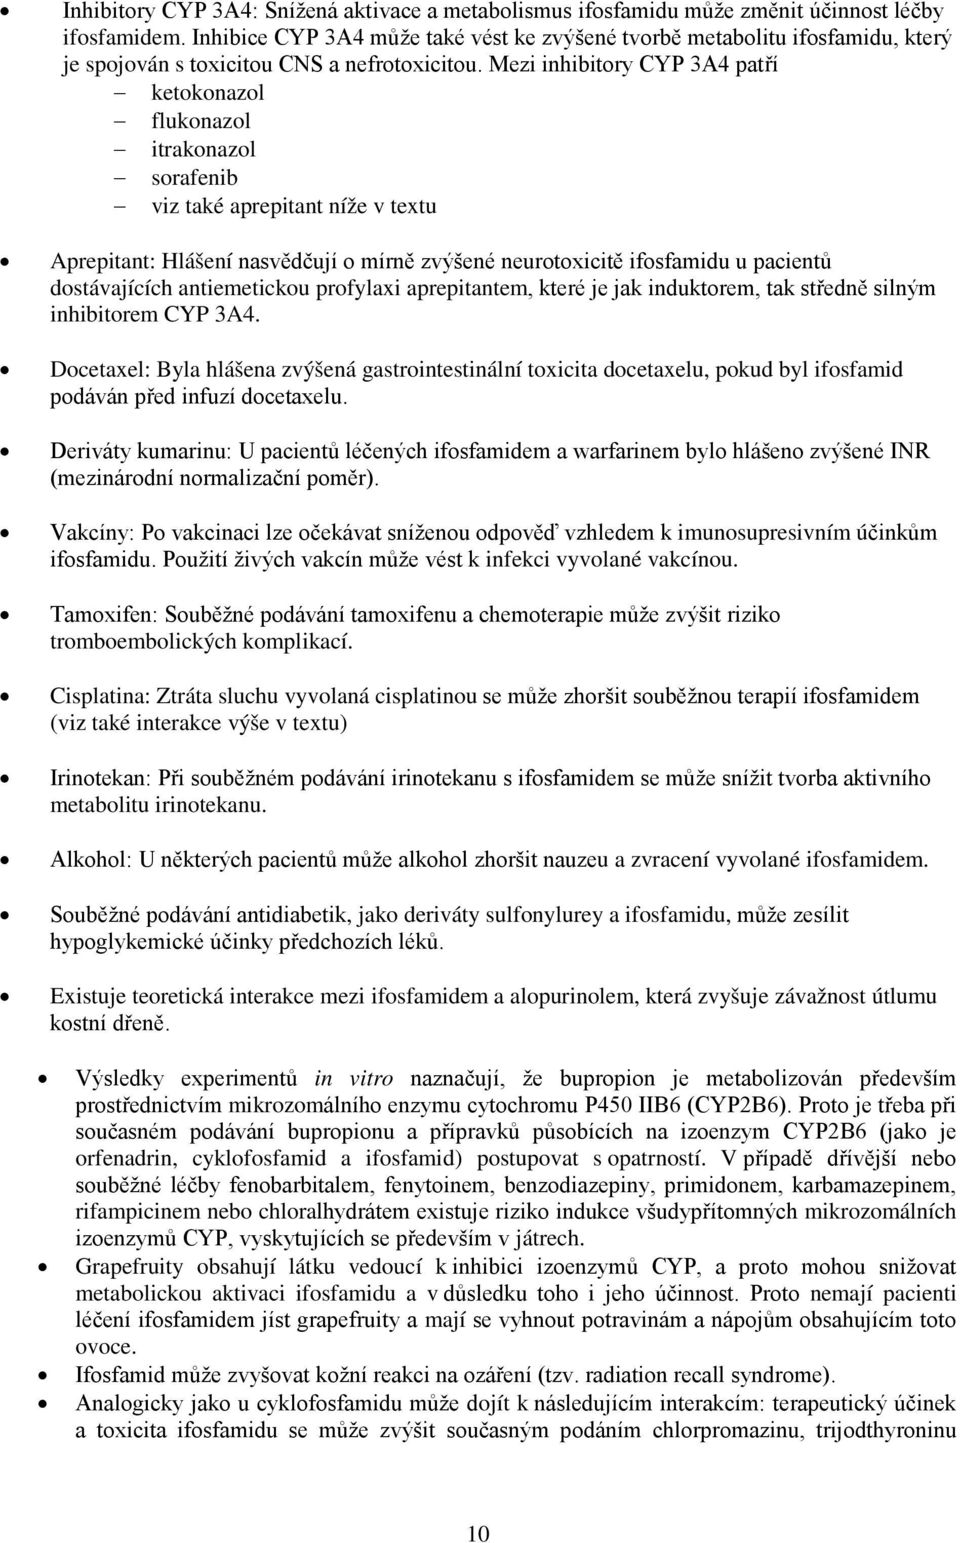 Mezi inhibitory CYP 3A4 patří ketokonazol flukonazol itrakonazol sorafenib viz také aprepitant níže v textu Aprepitant: Hlášení nasvědčují o mírně zvýšené neurotoxicitě ifosfamidu u pacientů